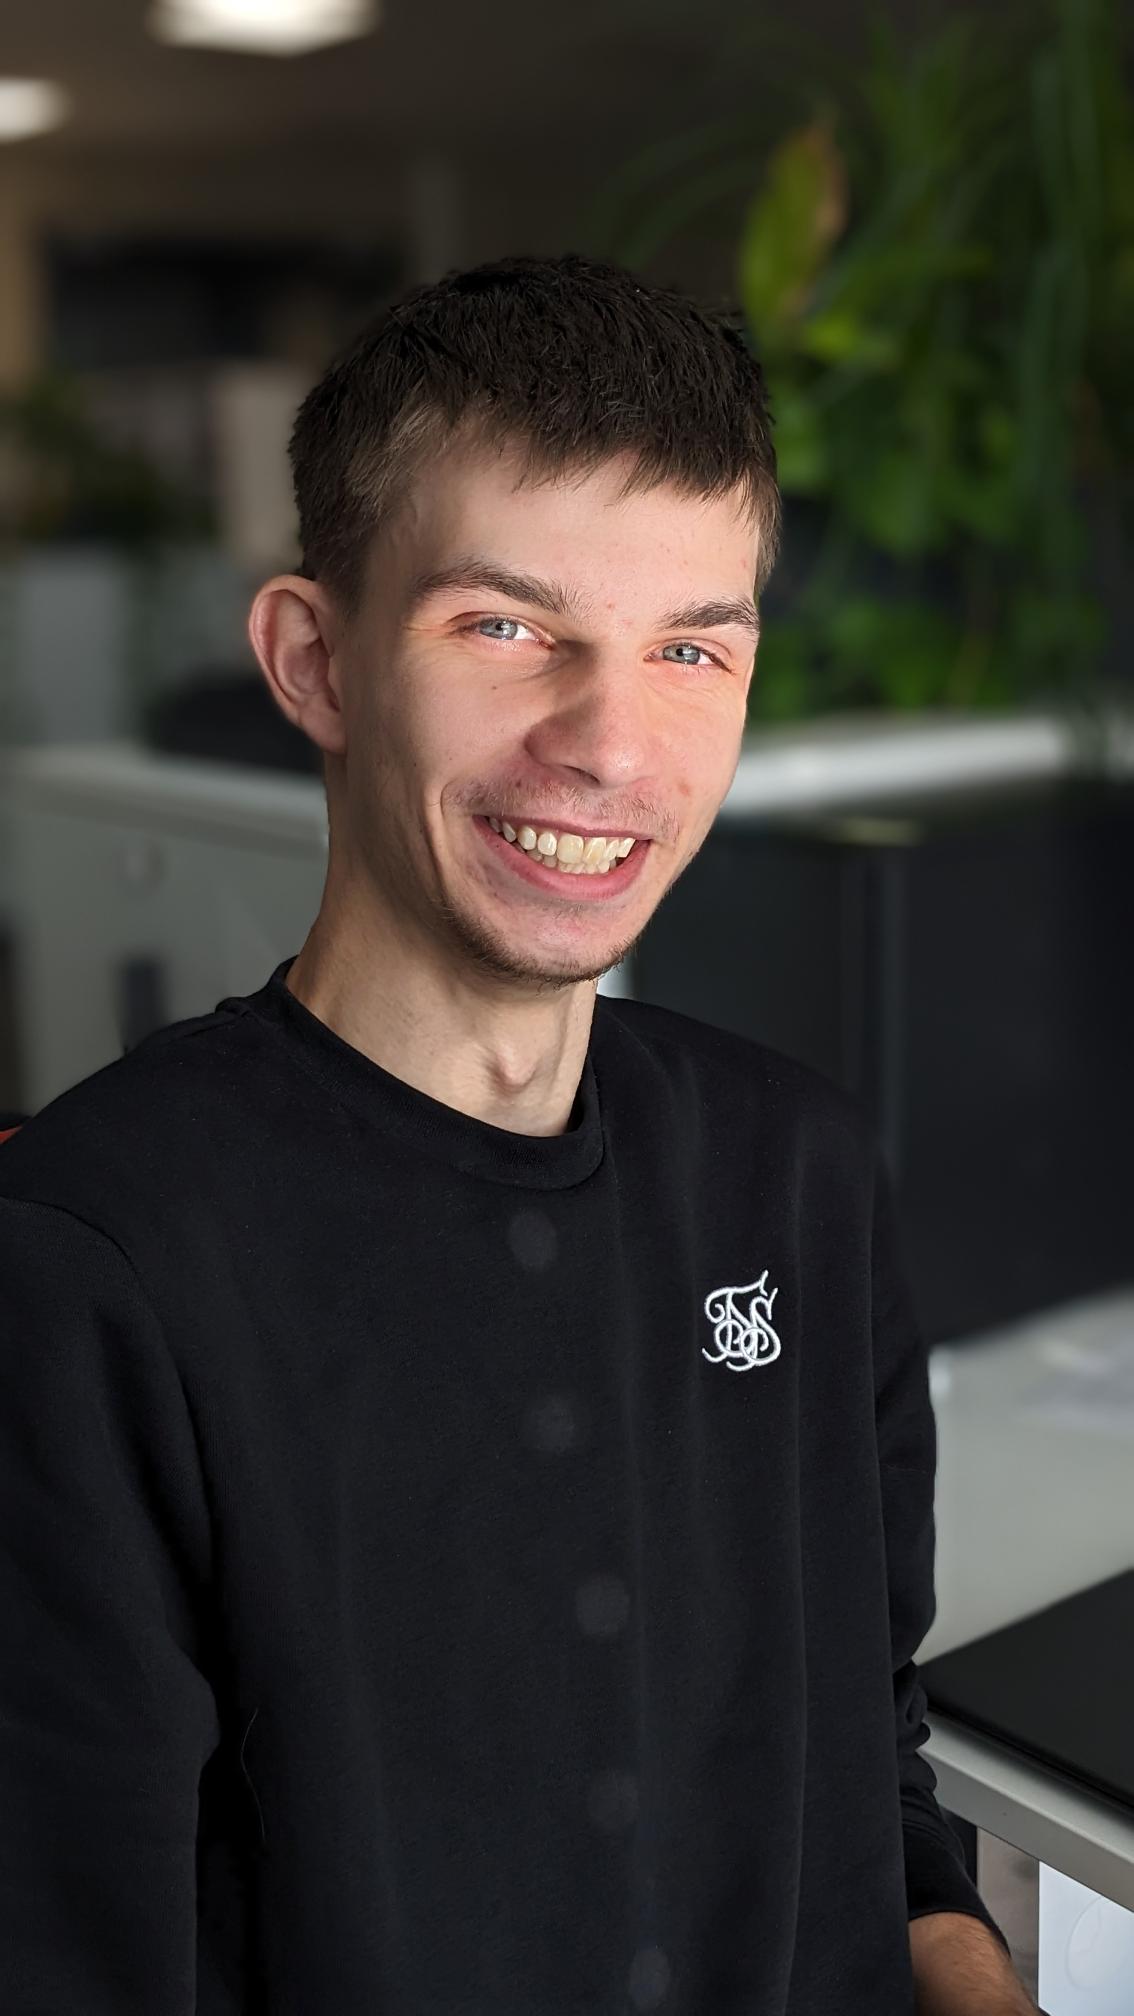 Dustin - trainee IT specialist